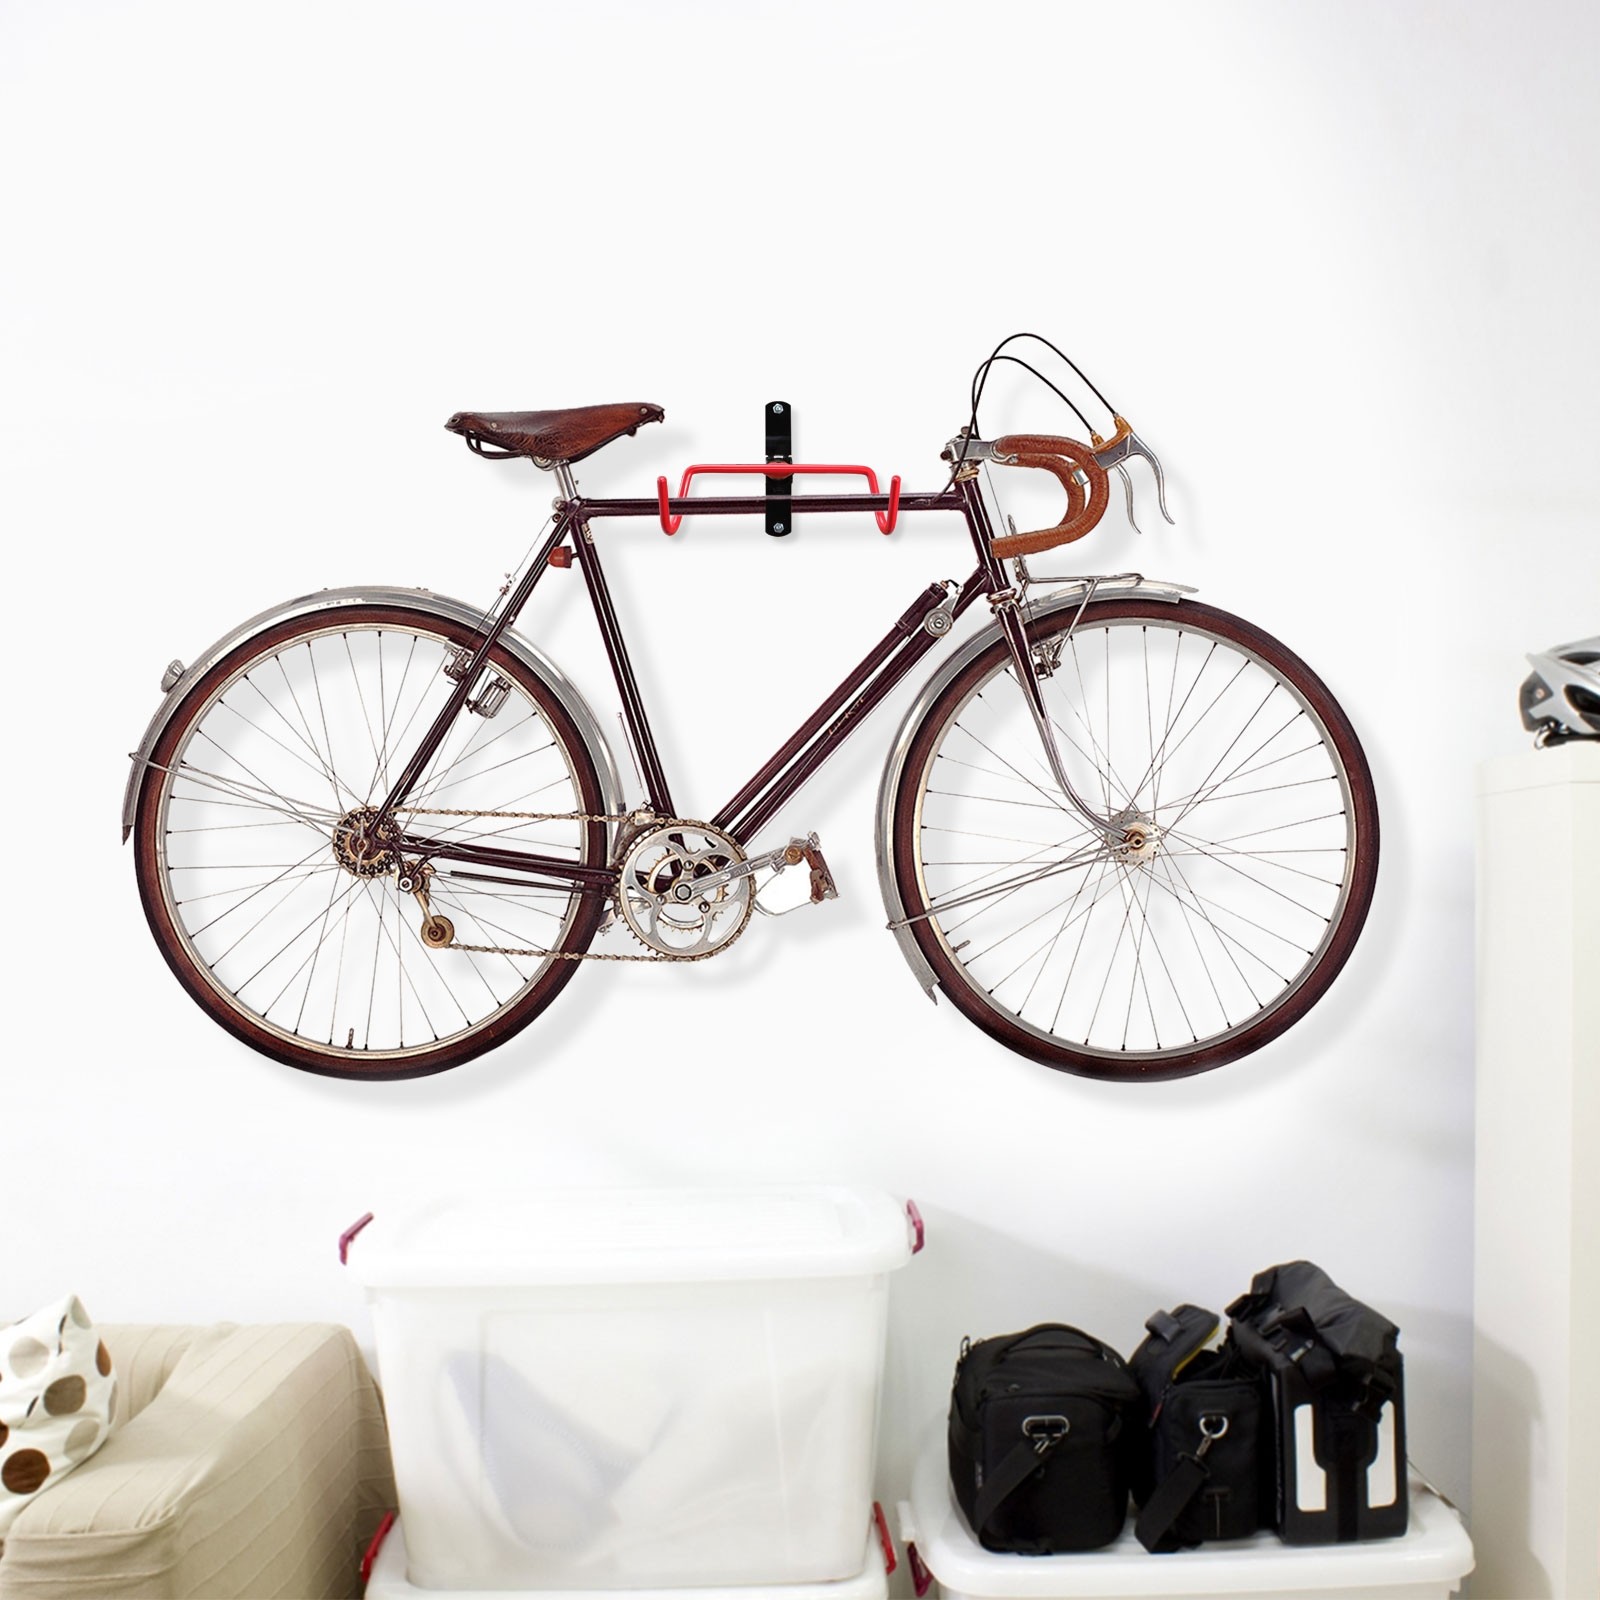 hook to hang bike on wall